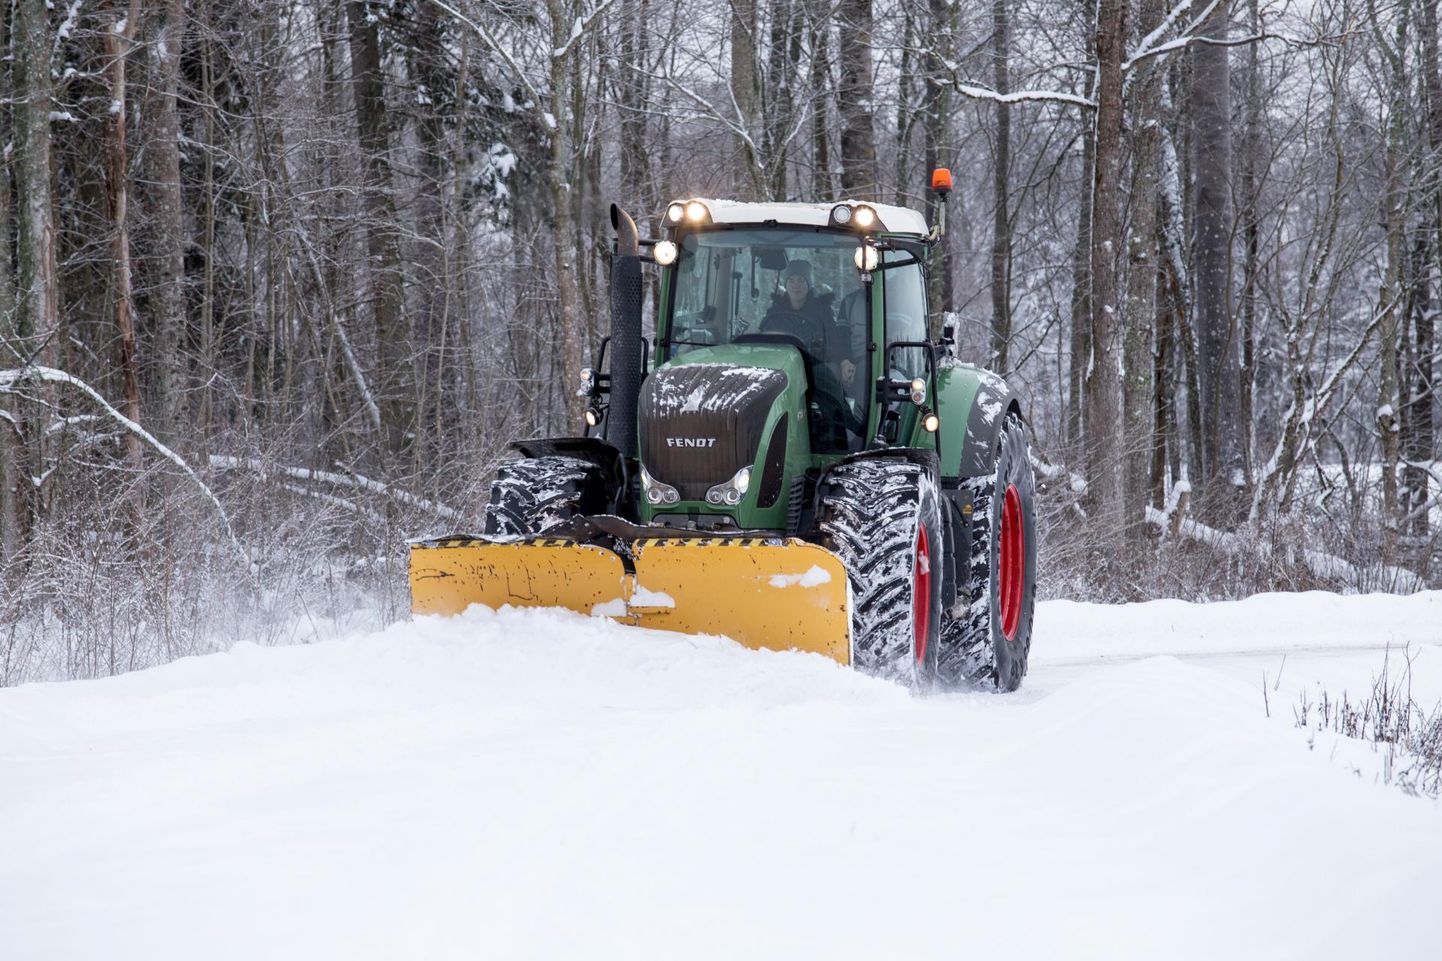 Traktorit hakatakse kasutama aasta ringI teede hooldamisel, sealhulgas talvel lume lükkamisel.